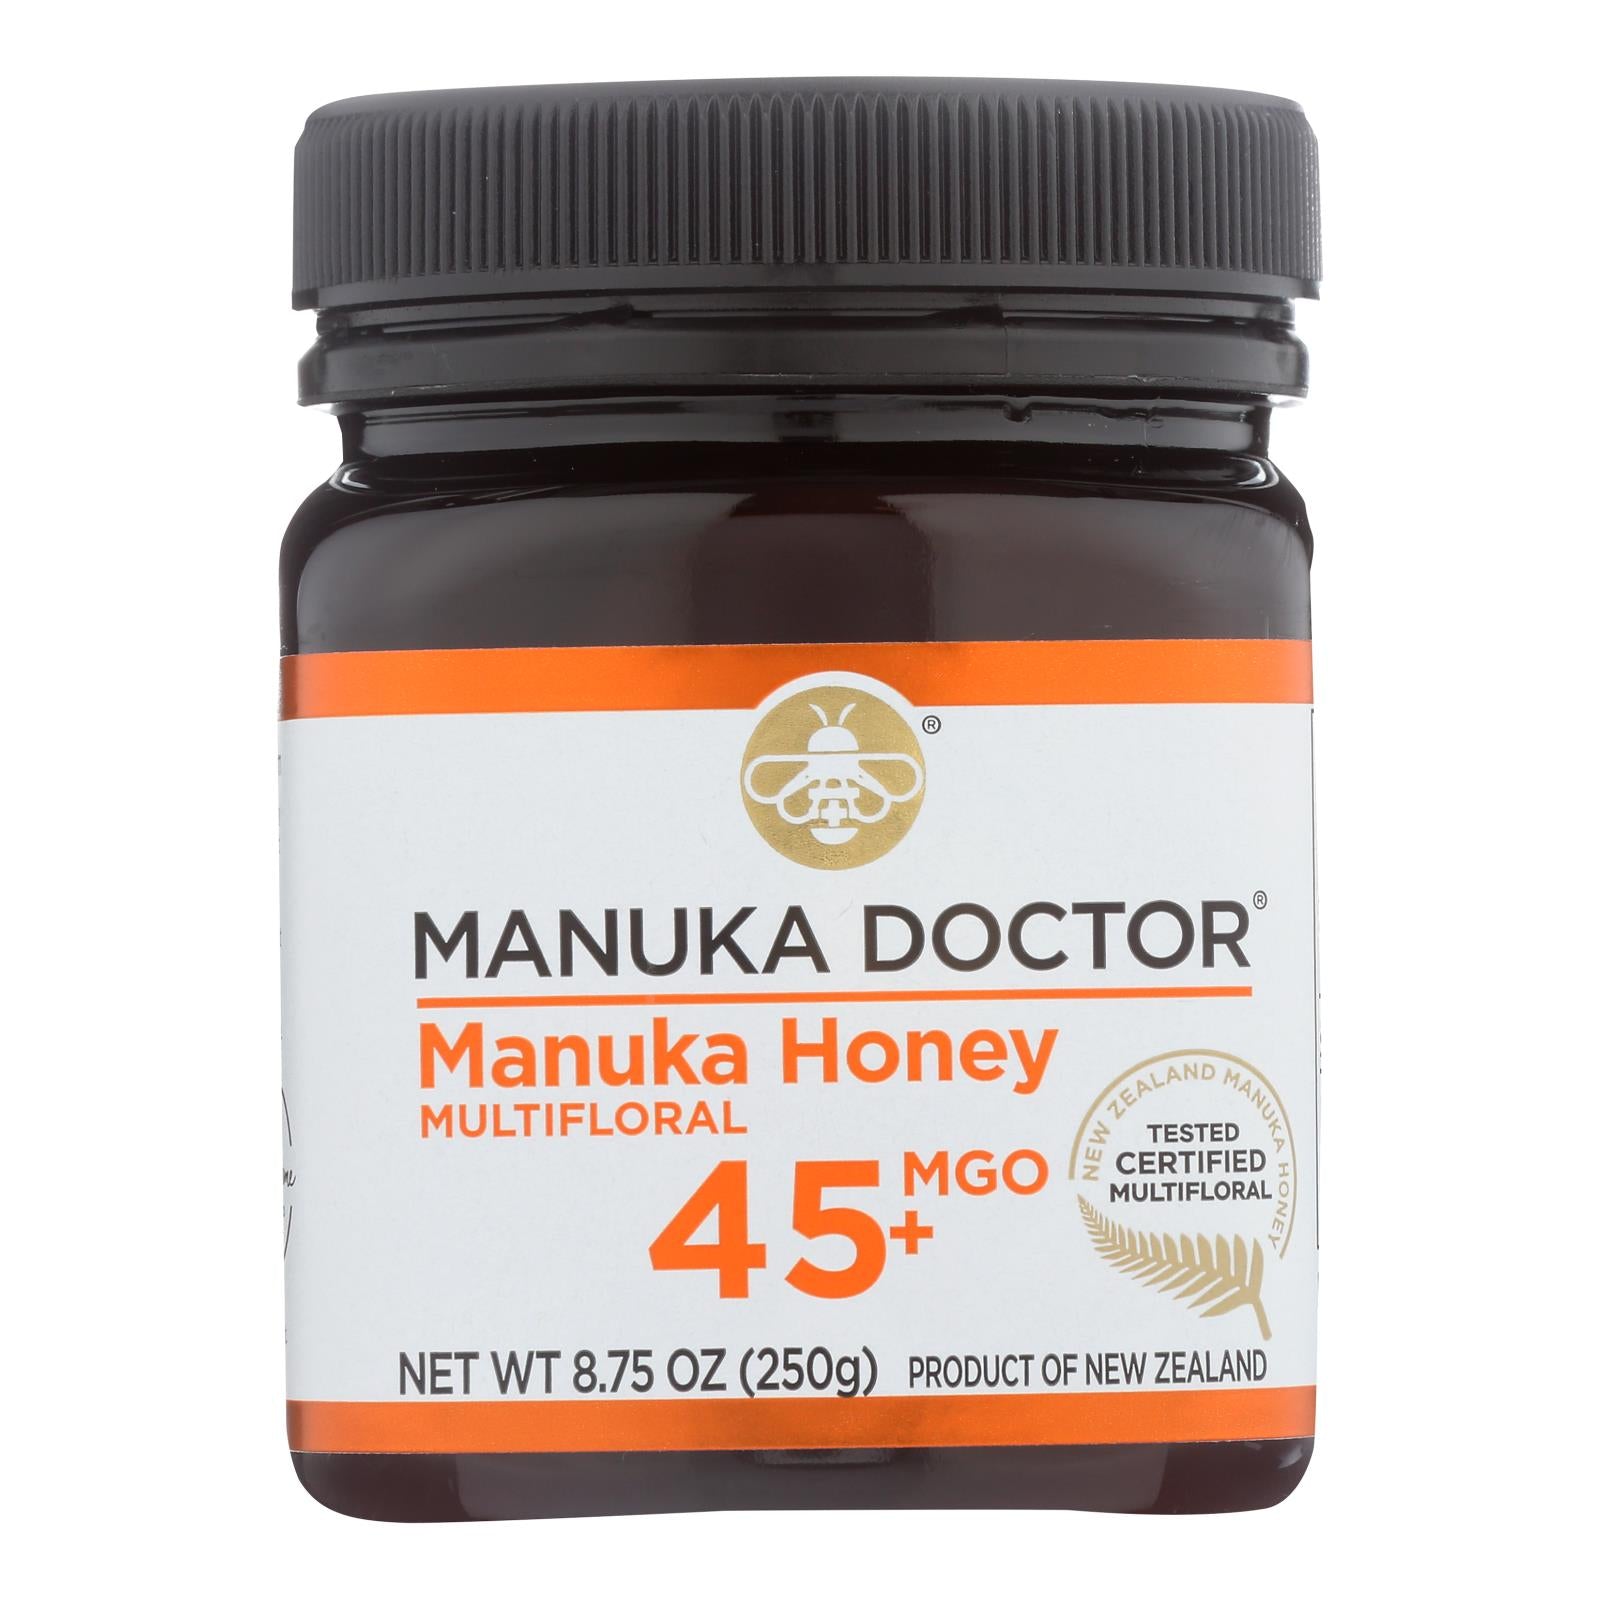 Docteur Manuka, Manuka Doctor - Miel de Manuka Mf Mgo45+ 250g - Carton de 6-8.75 OZ (Pack de 6)